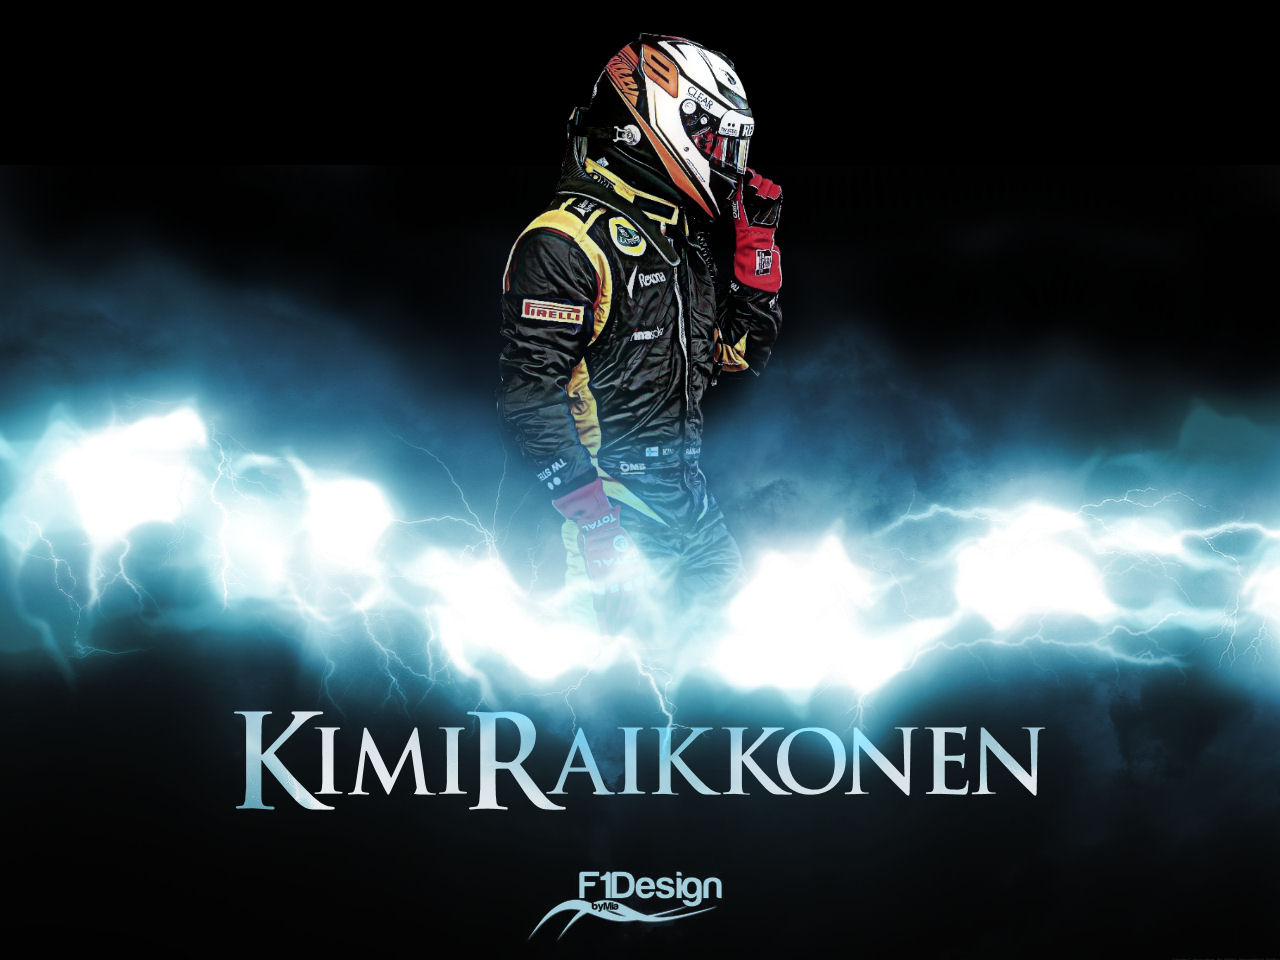 Kimi Räikkönen Fans on X: 